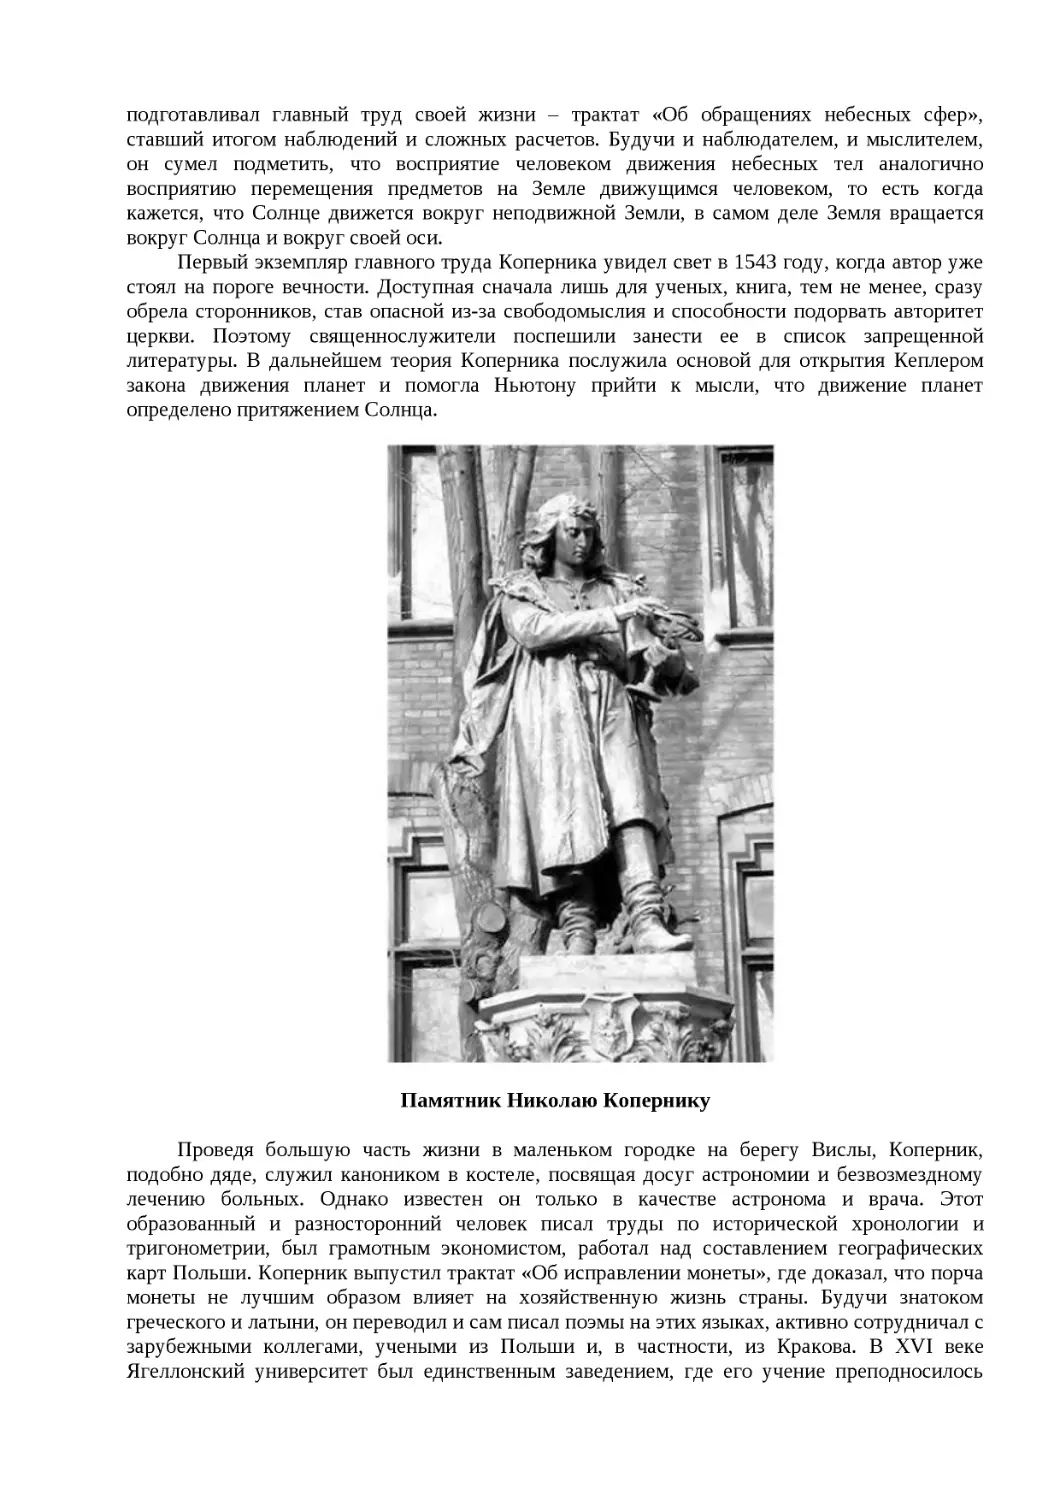 ﻿Памятник Николаю Коперник